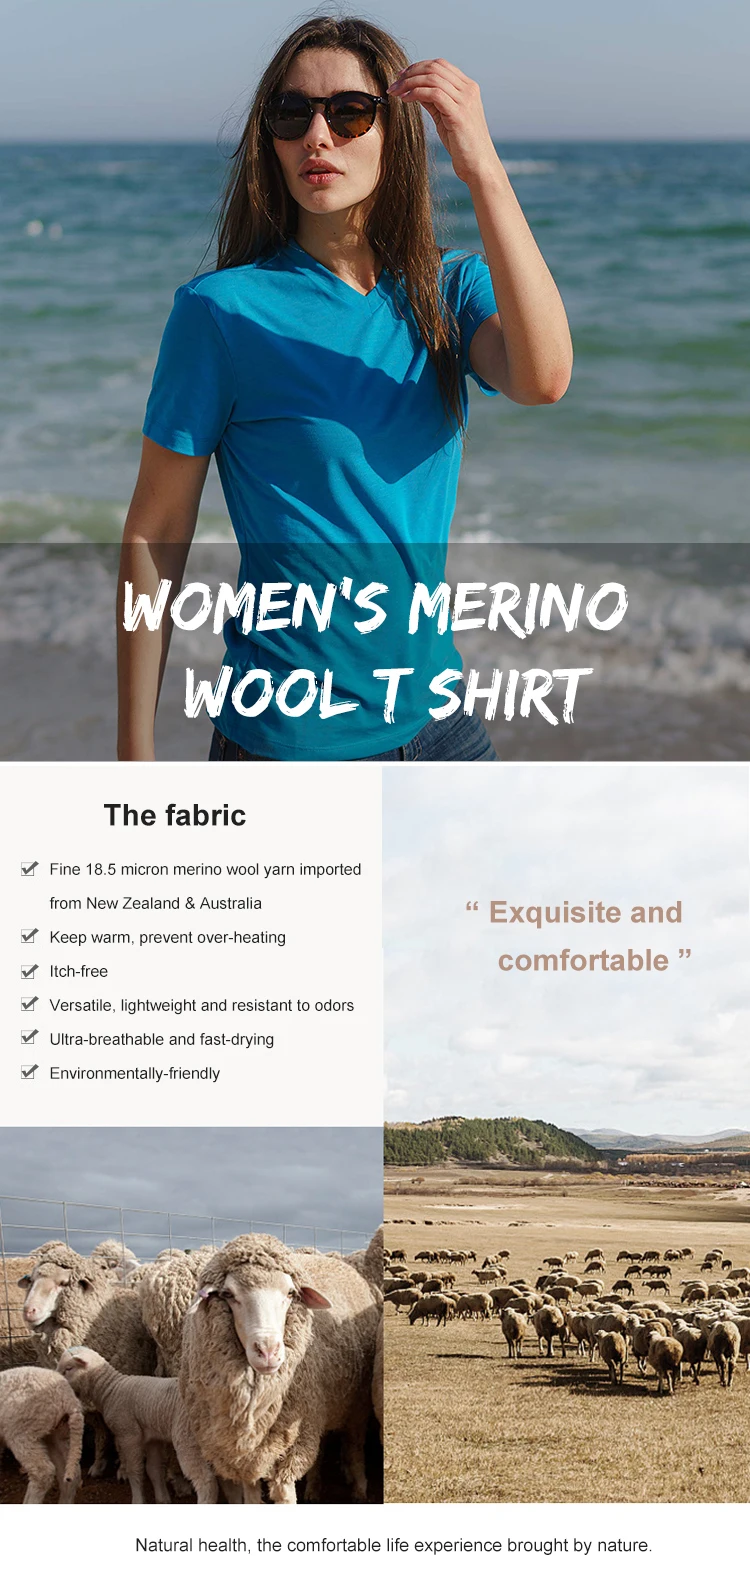 Enerup Custom Oem/Odm Merino Wool Womens Short Sleeves Cotton T Shirt Basic Top Tees Blank Crew Neck Streetwear Short Sleeve